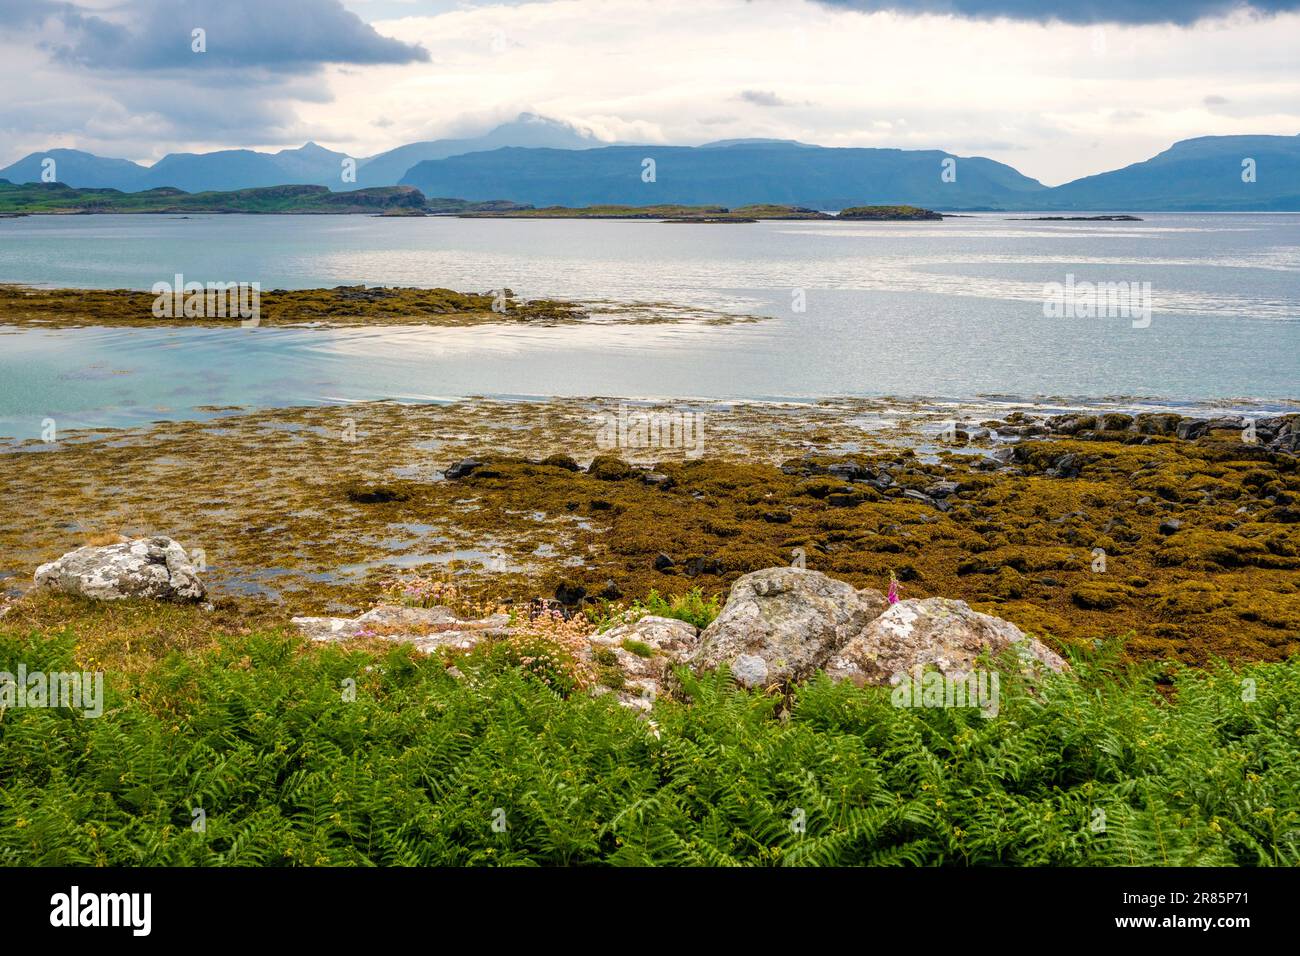 En regardant à Mull depuis Ulva, une petite île au large de la côte ouest de l'île de Mull, en Écosse Banque D'Images